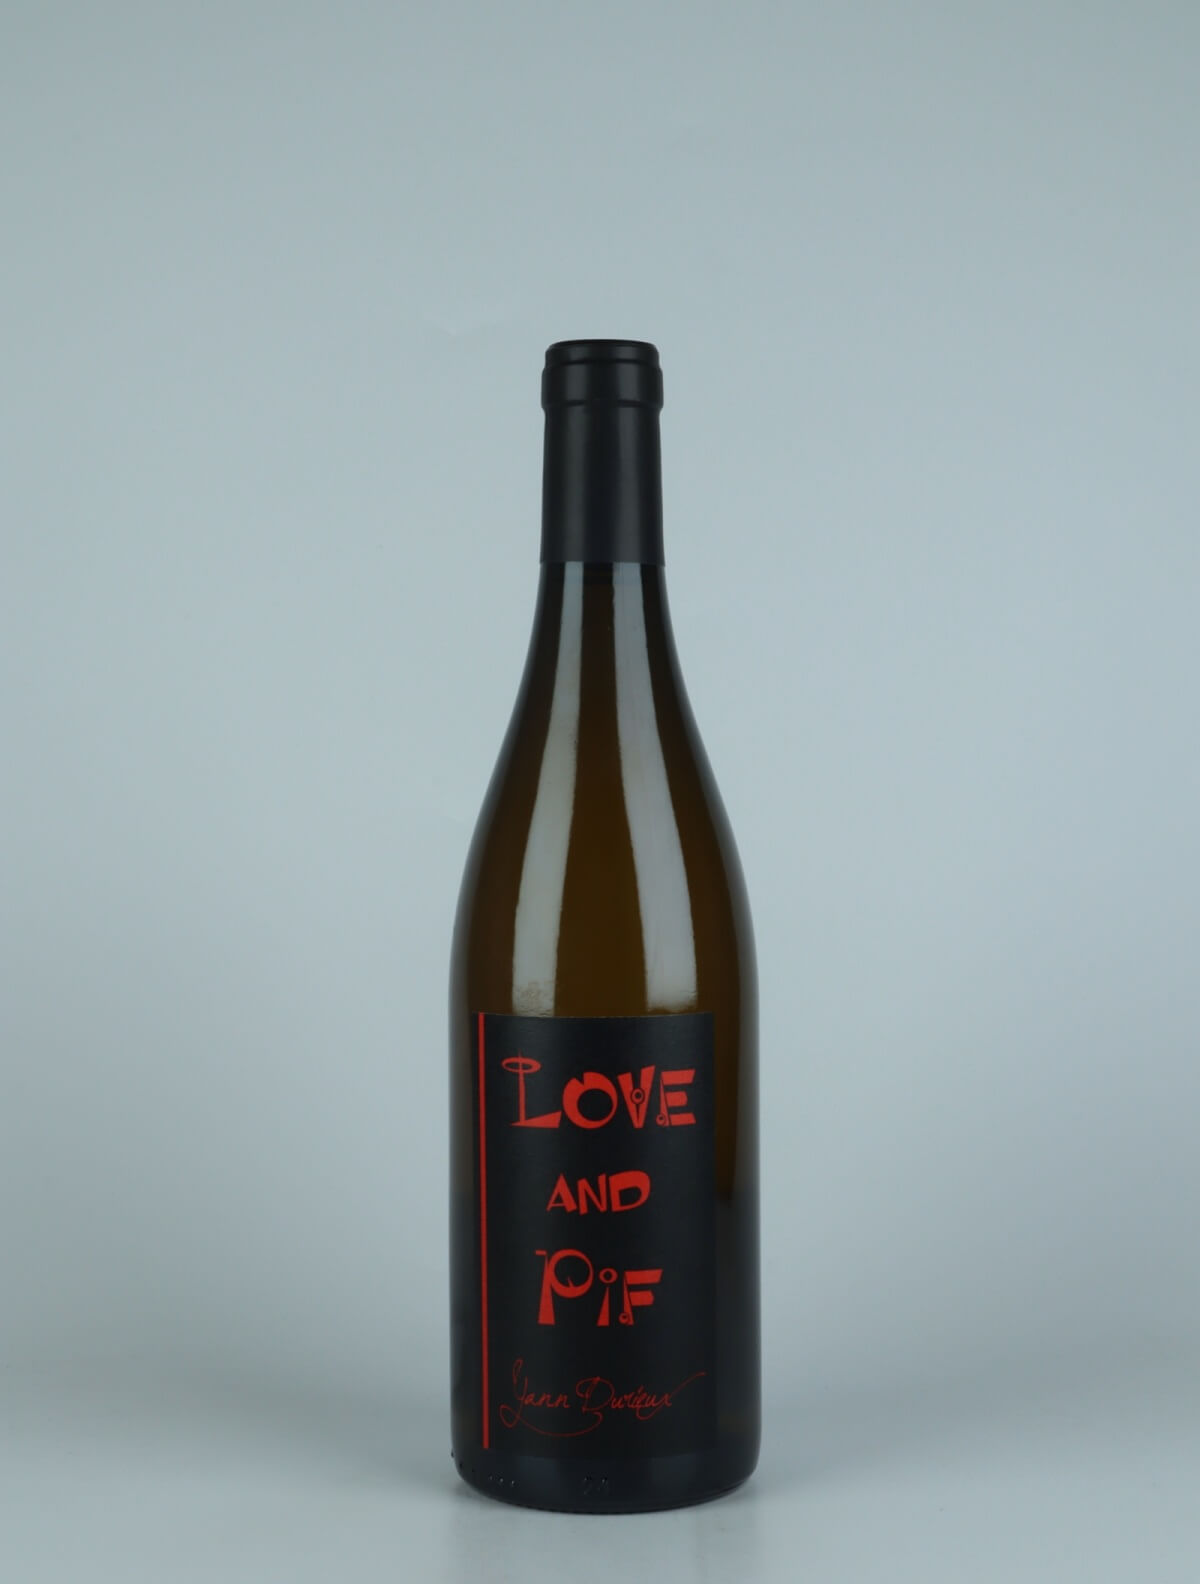 En flaske 2020 Aligoté - Love and Pif Hvidvin fra Yann Durieux, Bourgogne i Frankrig